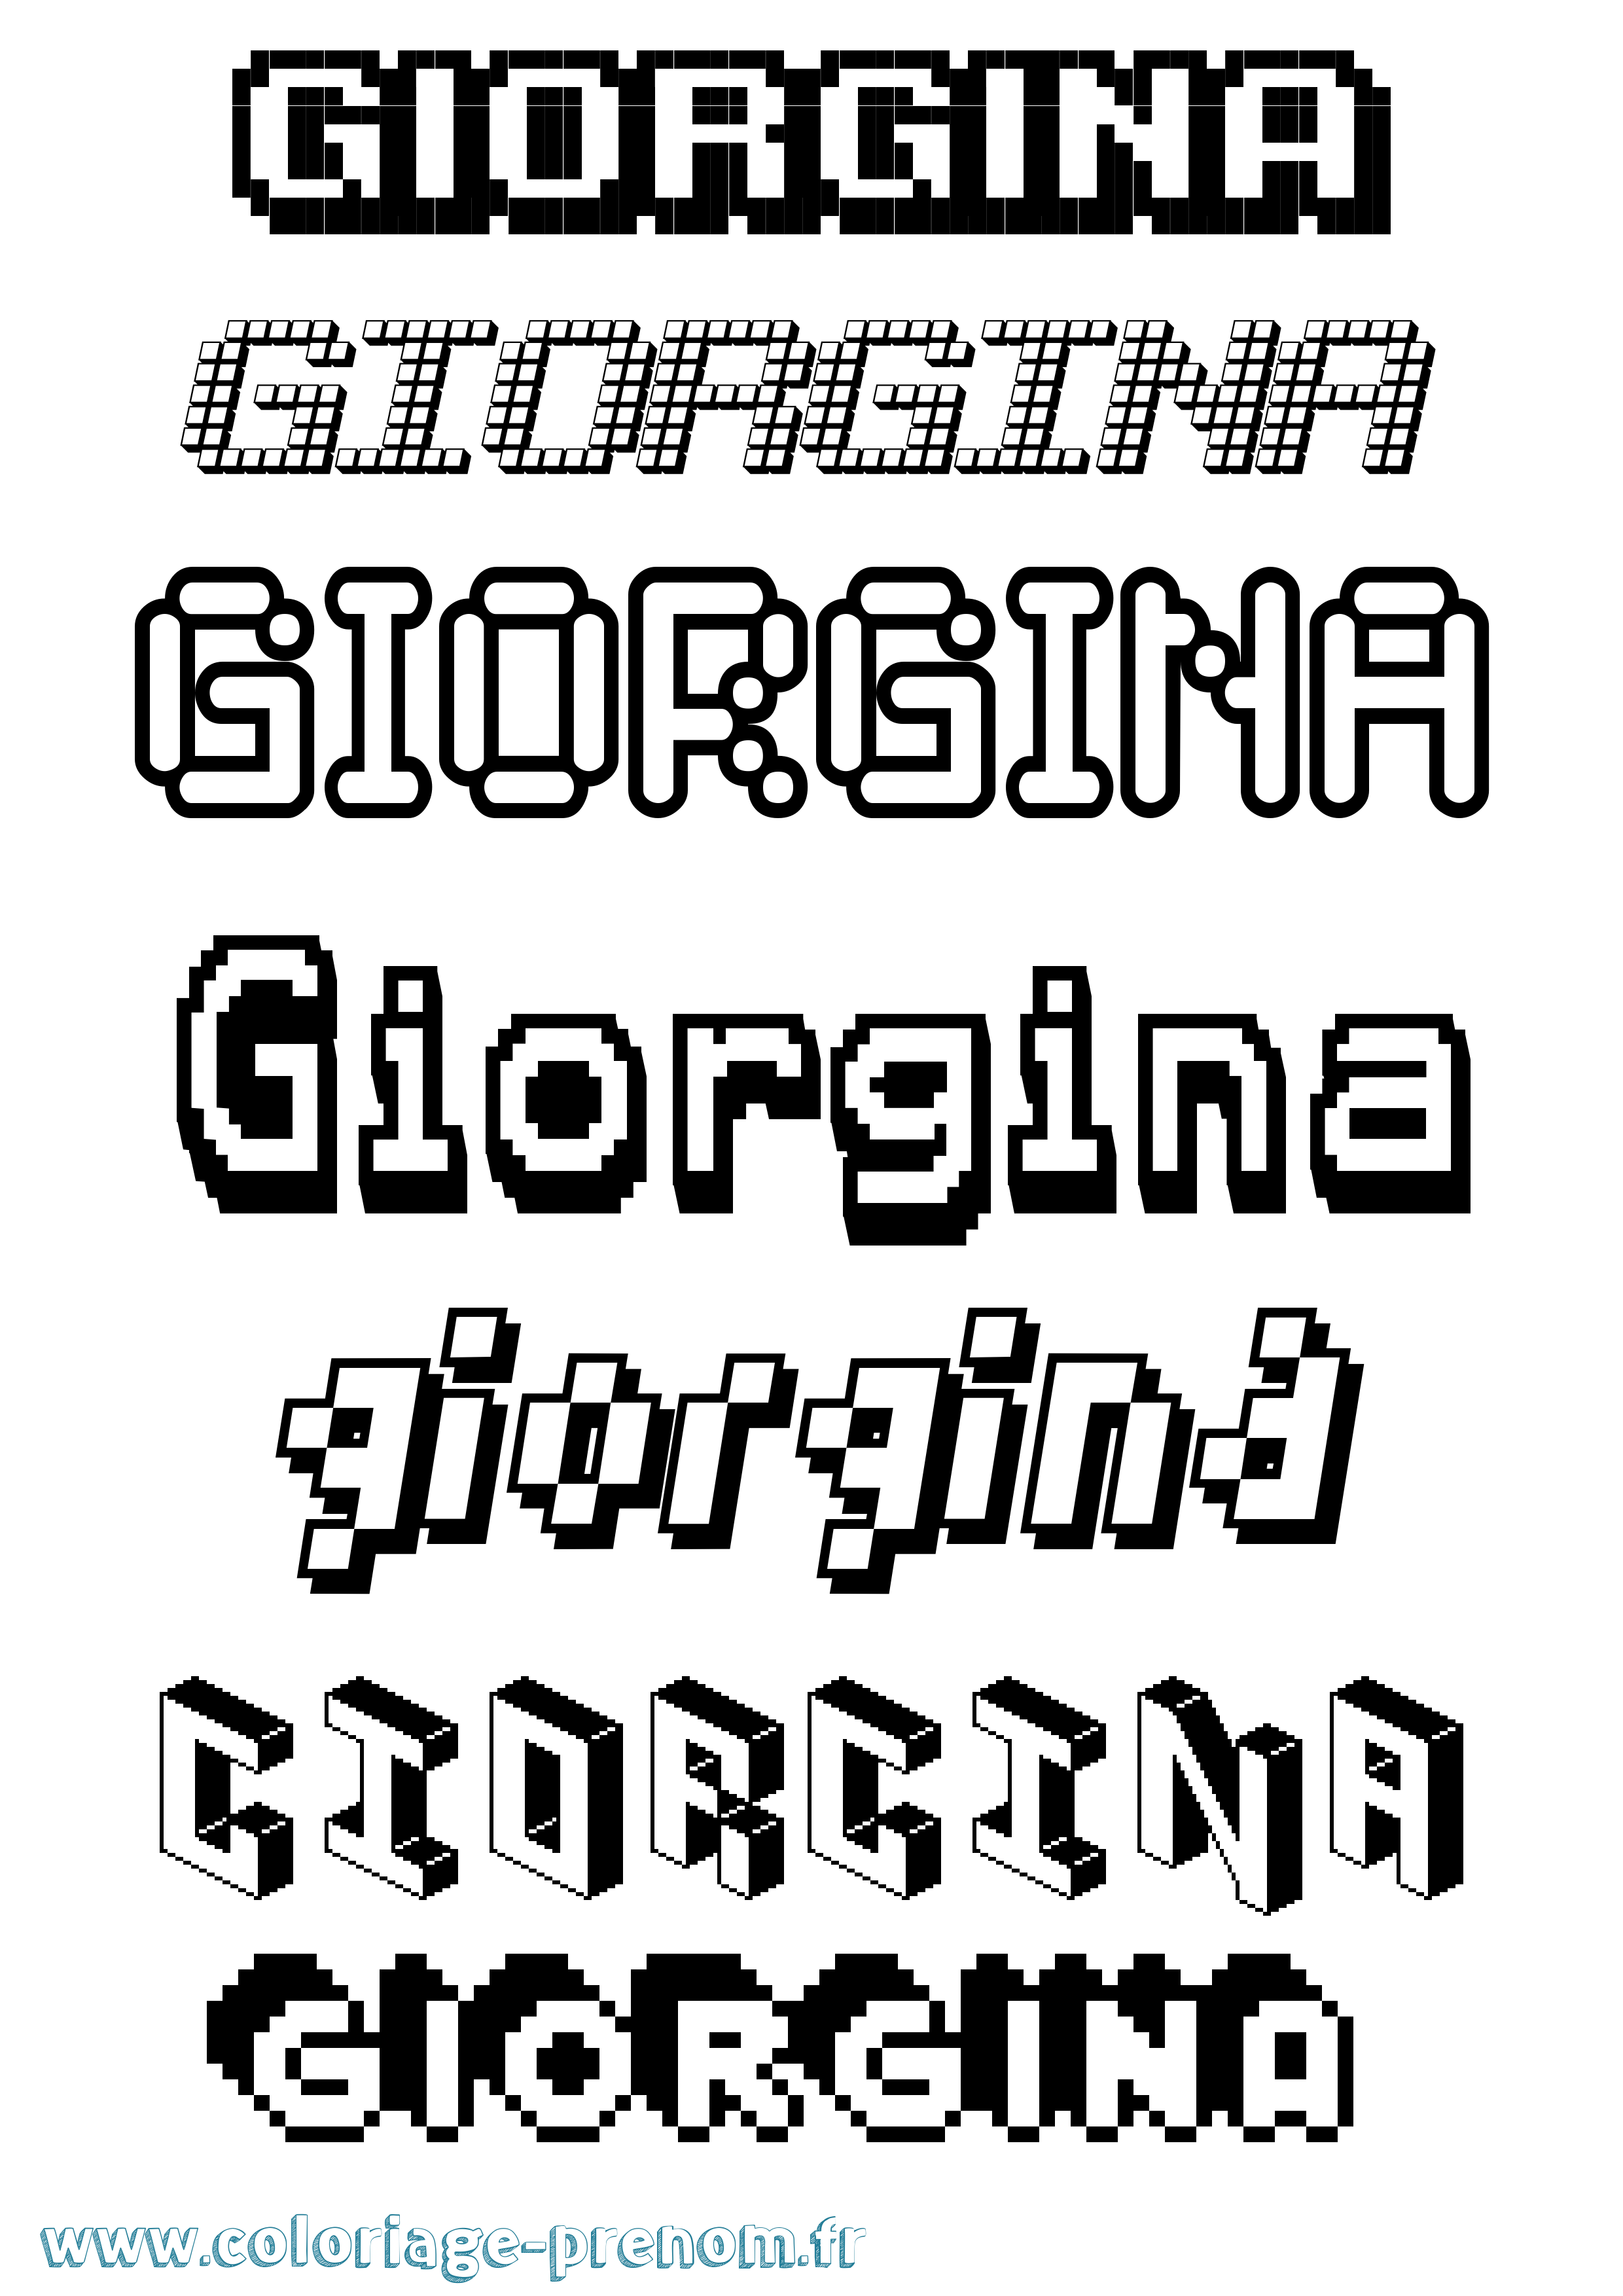 Coloriage prénom Giorgina Pixel